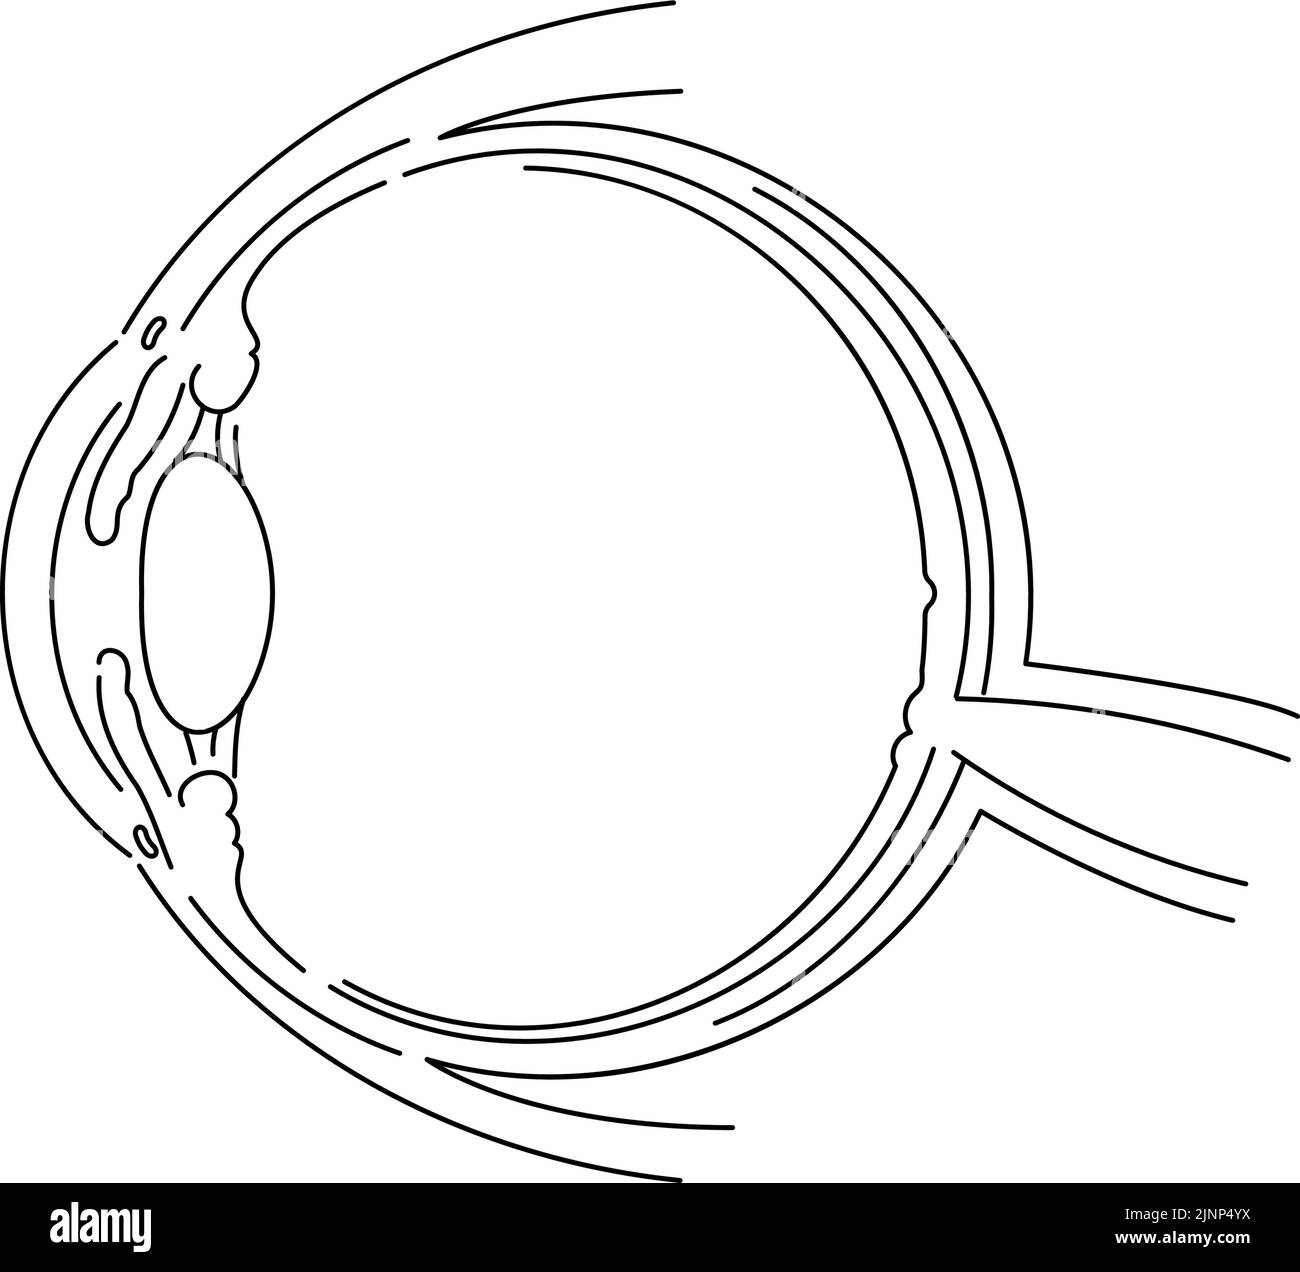 Illustrazione schematica dell'occhio (disegno a linee) Illustrazione Vettoriale